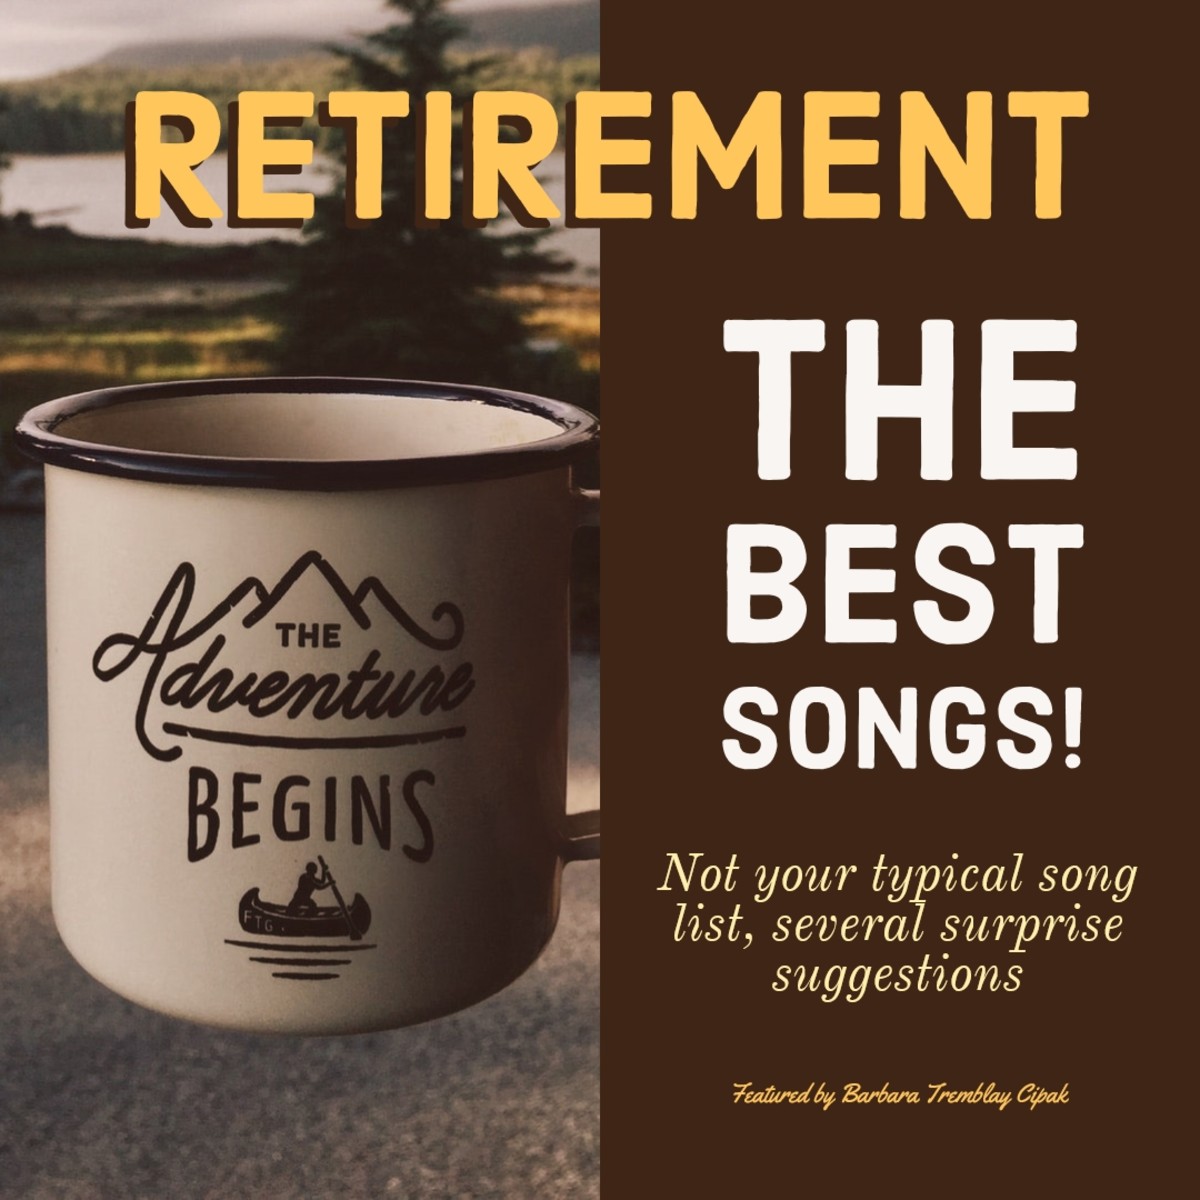 Khám phá những bài hát hay về nghỉ hưu, để tận hưởng sự thoải mái và nhẹ nhàng mà âm nhạc mang lại. Những giai điệu nhẹ nhàng, lời ca tình cảm sẽ khiến bạn muốn lặng nghe và chìm đắm trong kiếp nghỉ hưu.